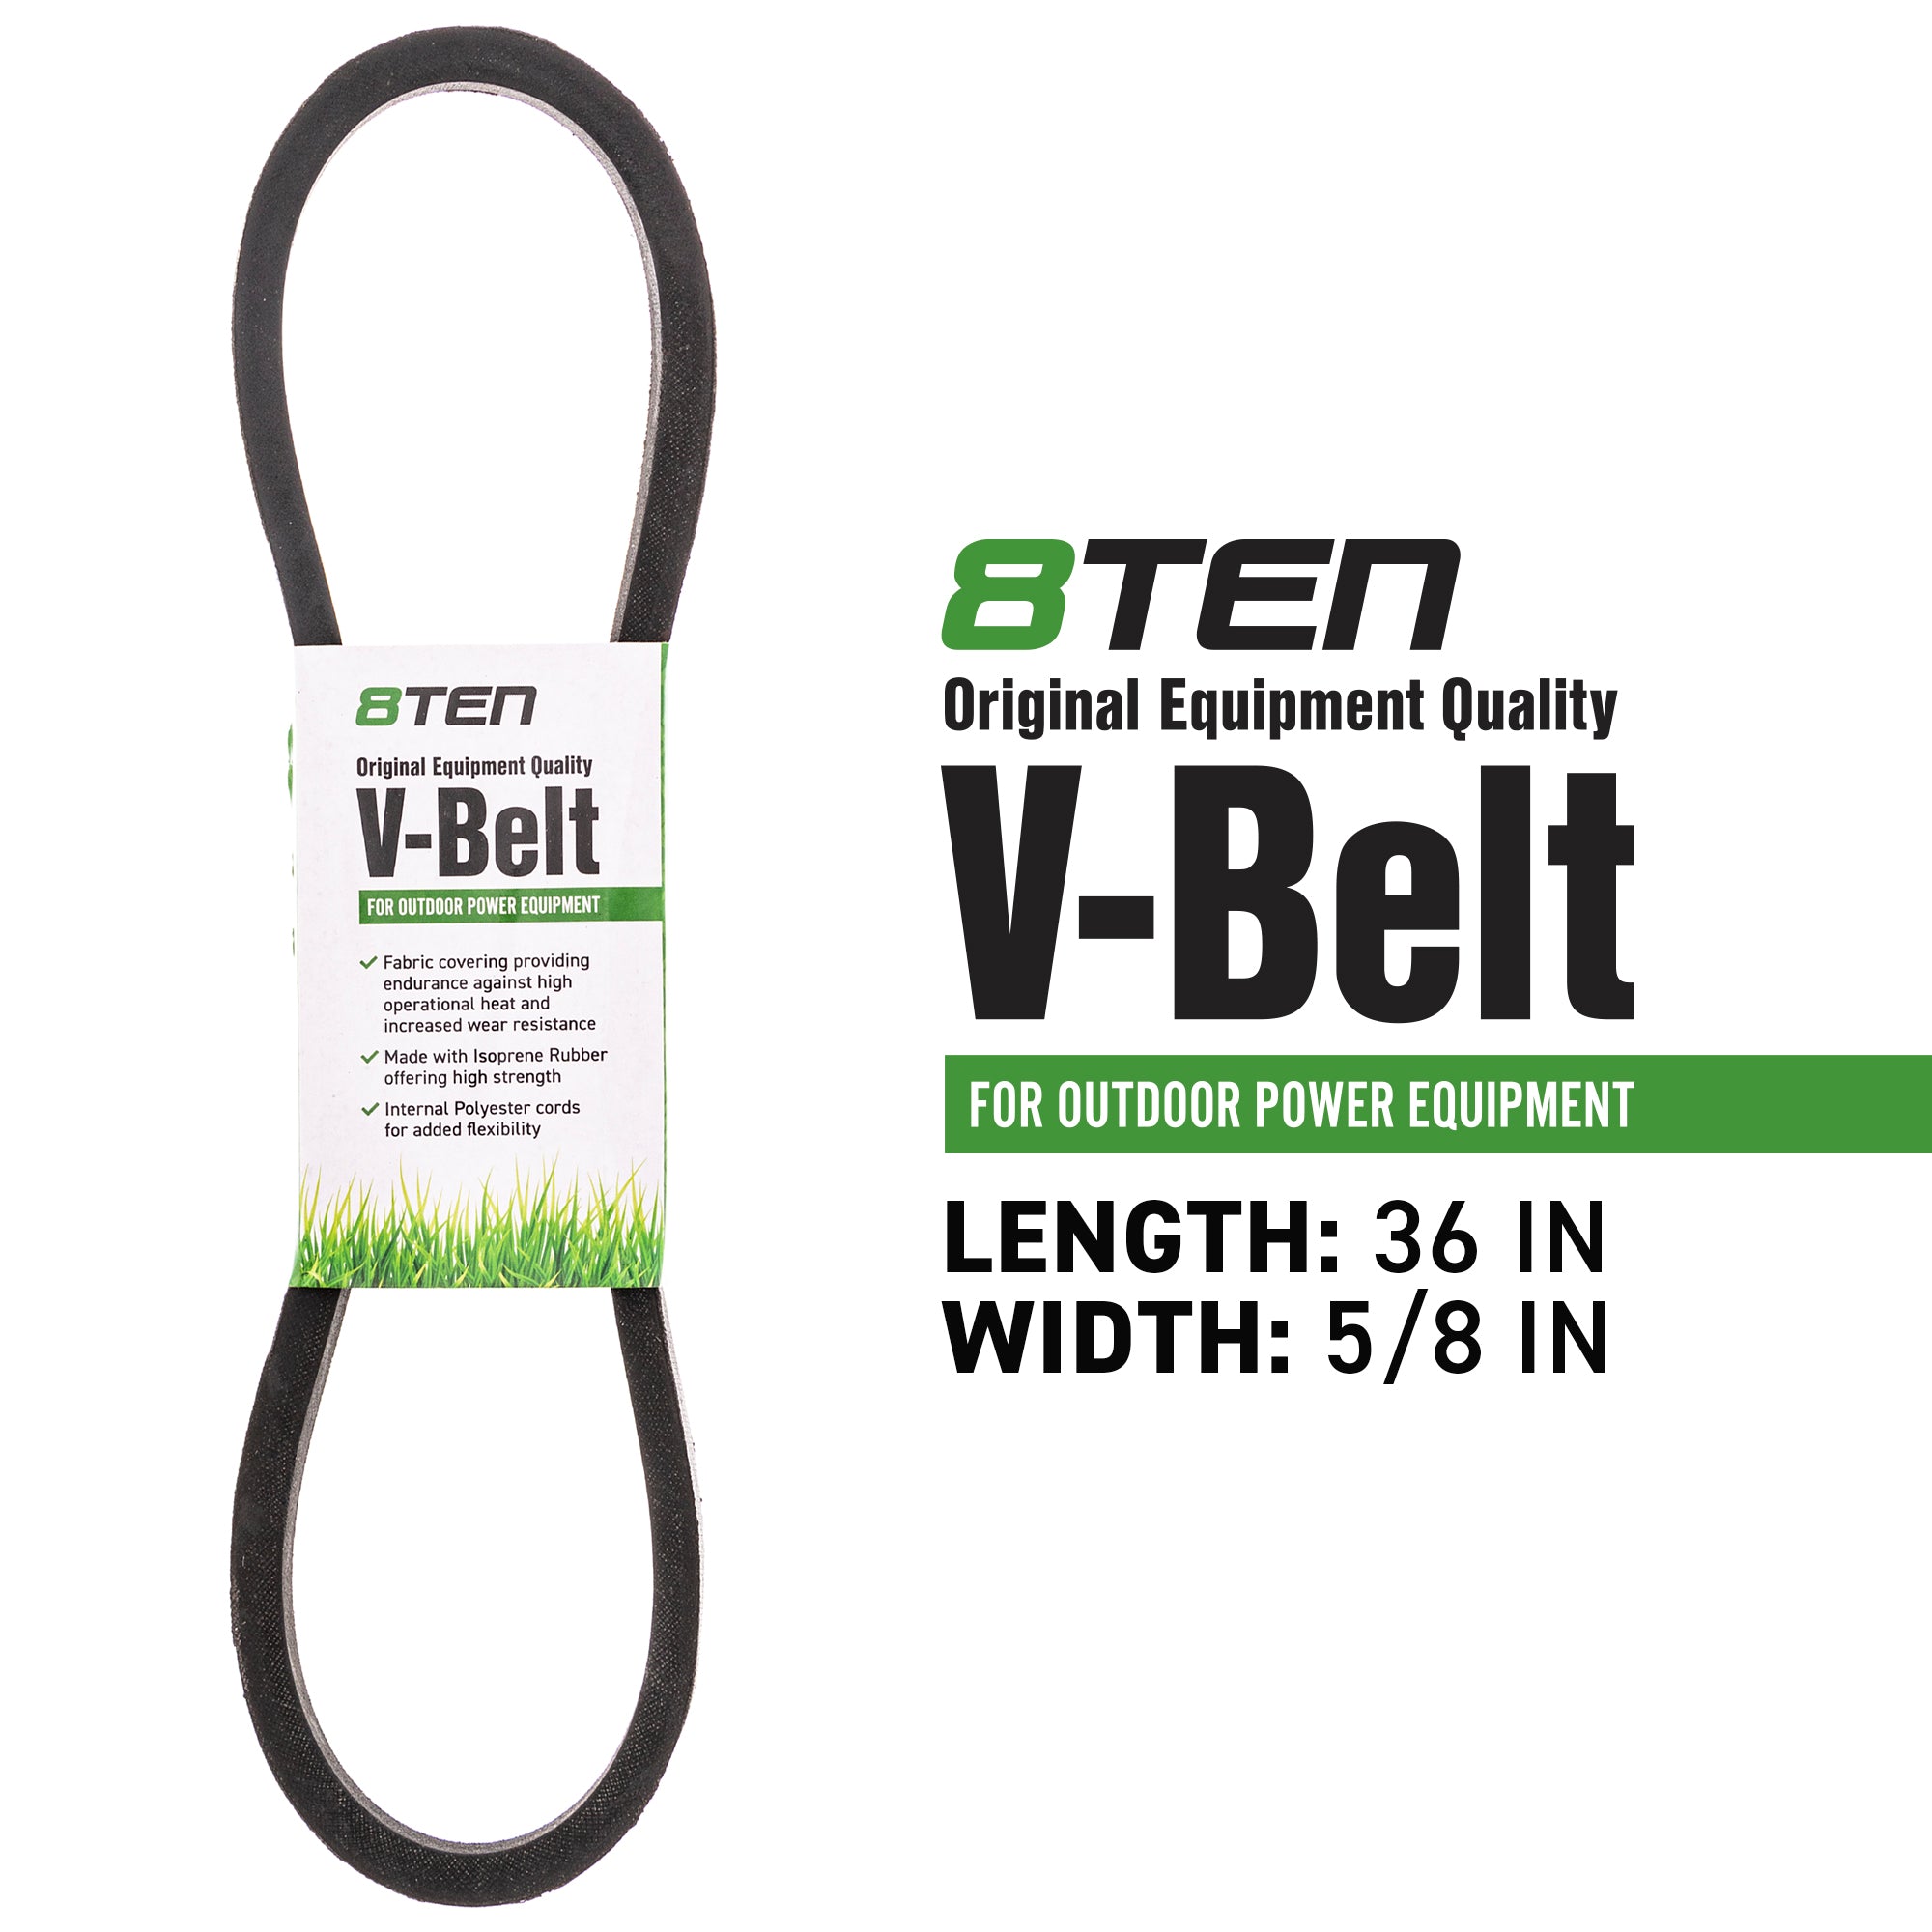 8TEN 810-CBL2461T Belt for zOTHER Stens MTD Cub Cadet Troy-Bilt